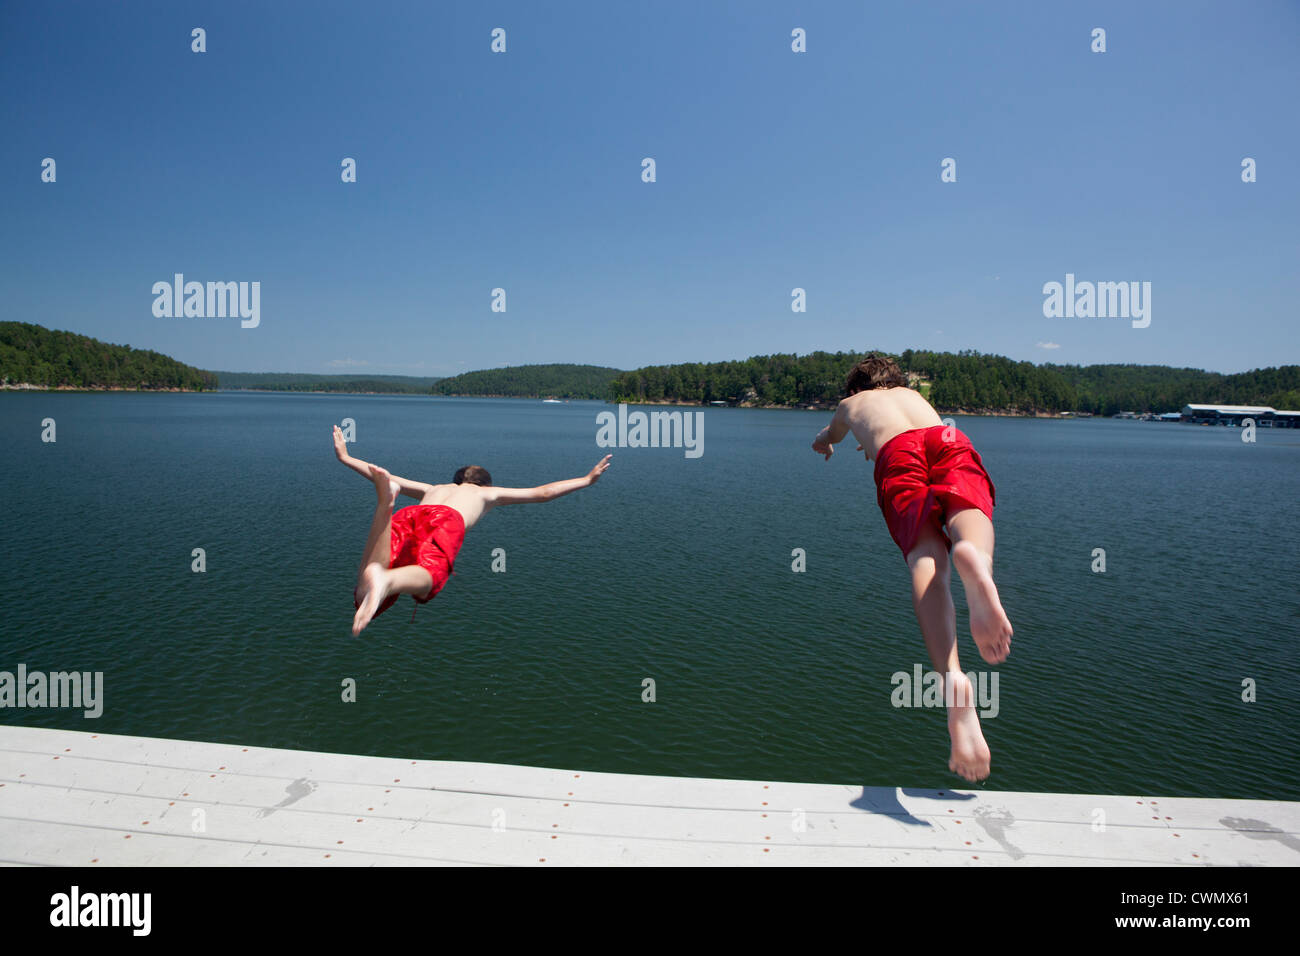 USA, Ohio, Murfreesboro, deux frères (8-9, 12-13) sauter dans l'eau Banque D'Images